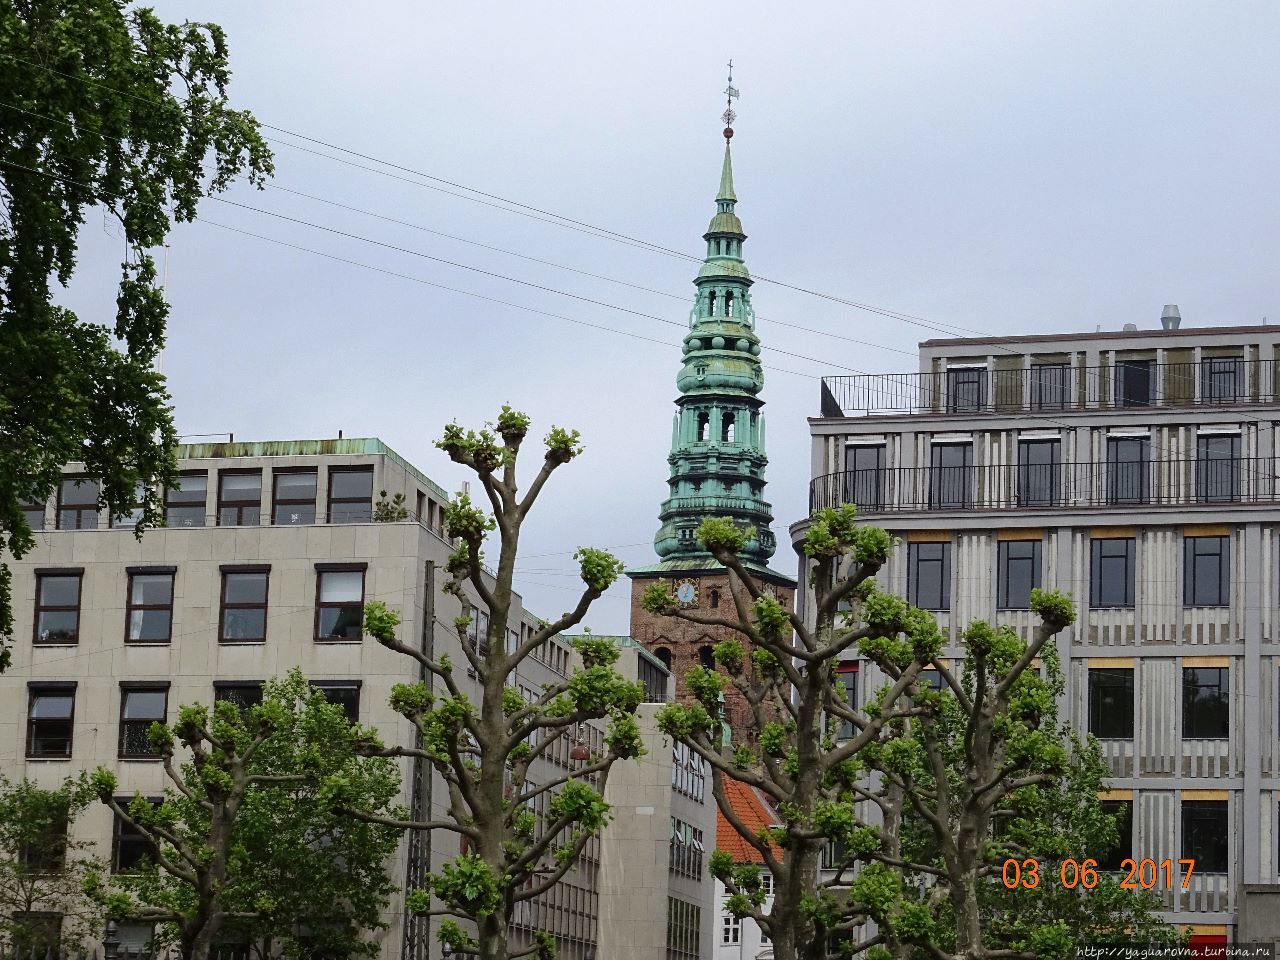 Копенгаген — знакомый город новыми тропами. Улицы, здания... Копенгаген, Дания